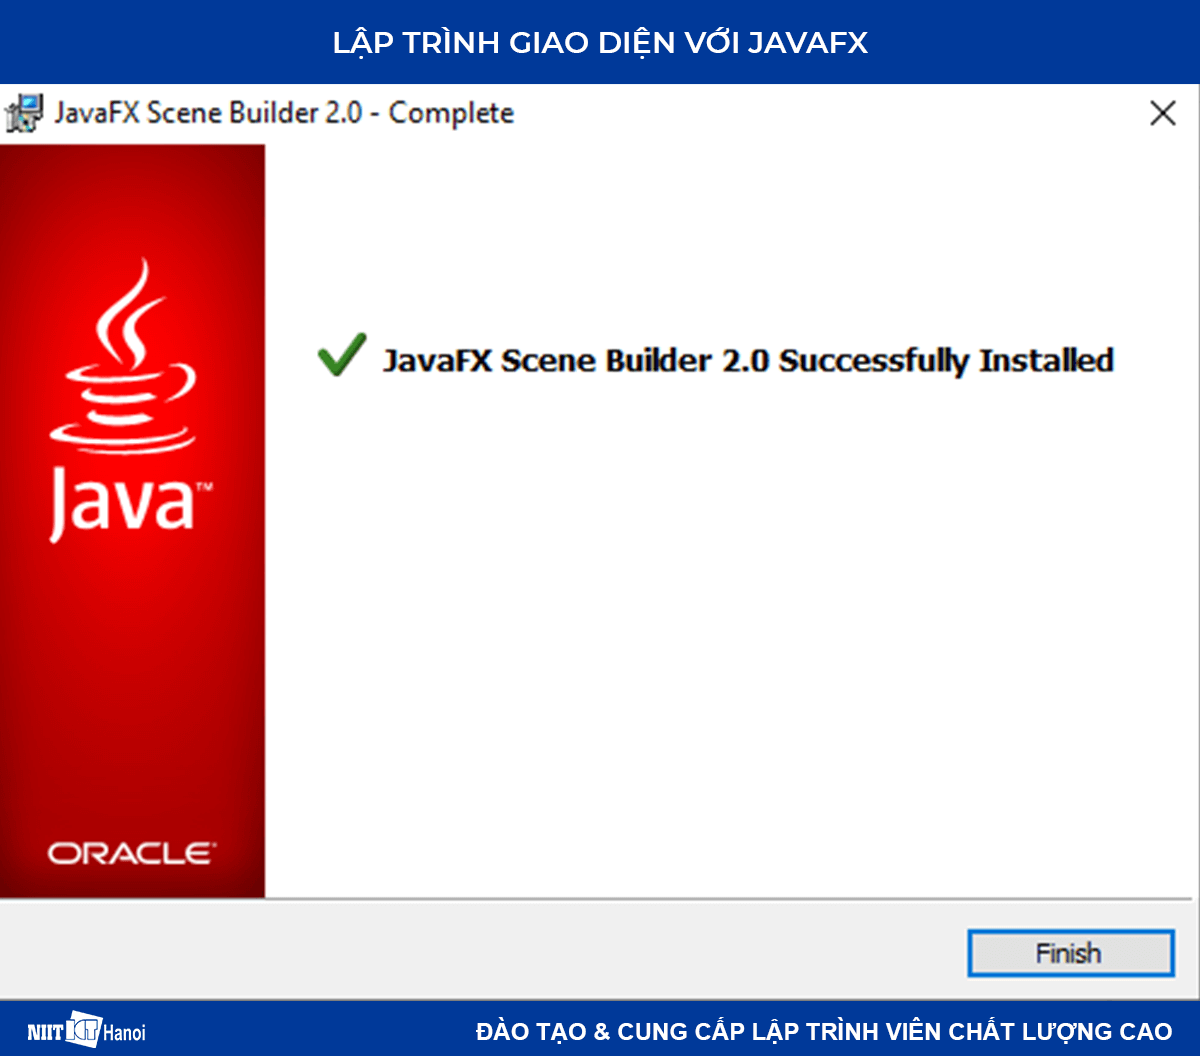 Lập trình giao diện với JavaFX: Cài đặt JavaFX Scence Builder - 4